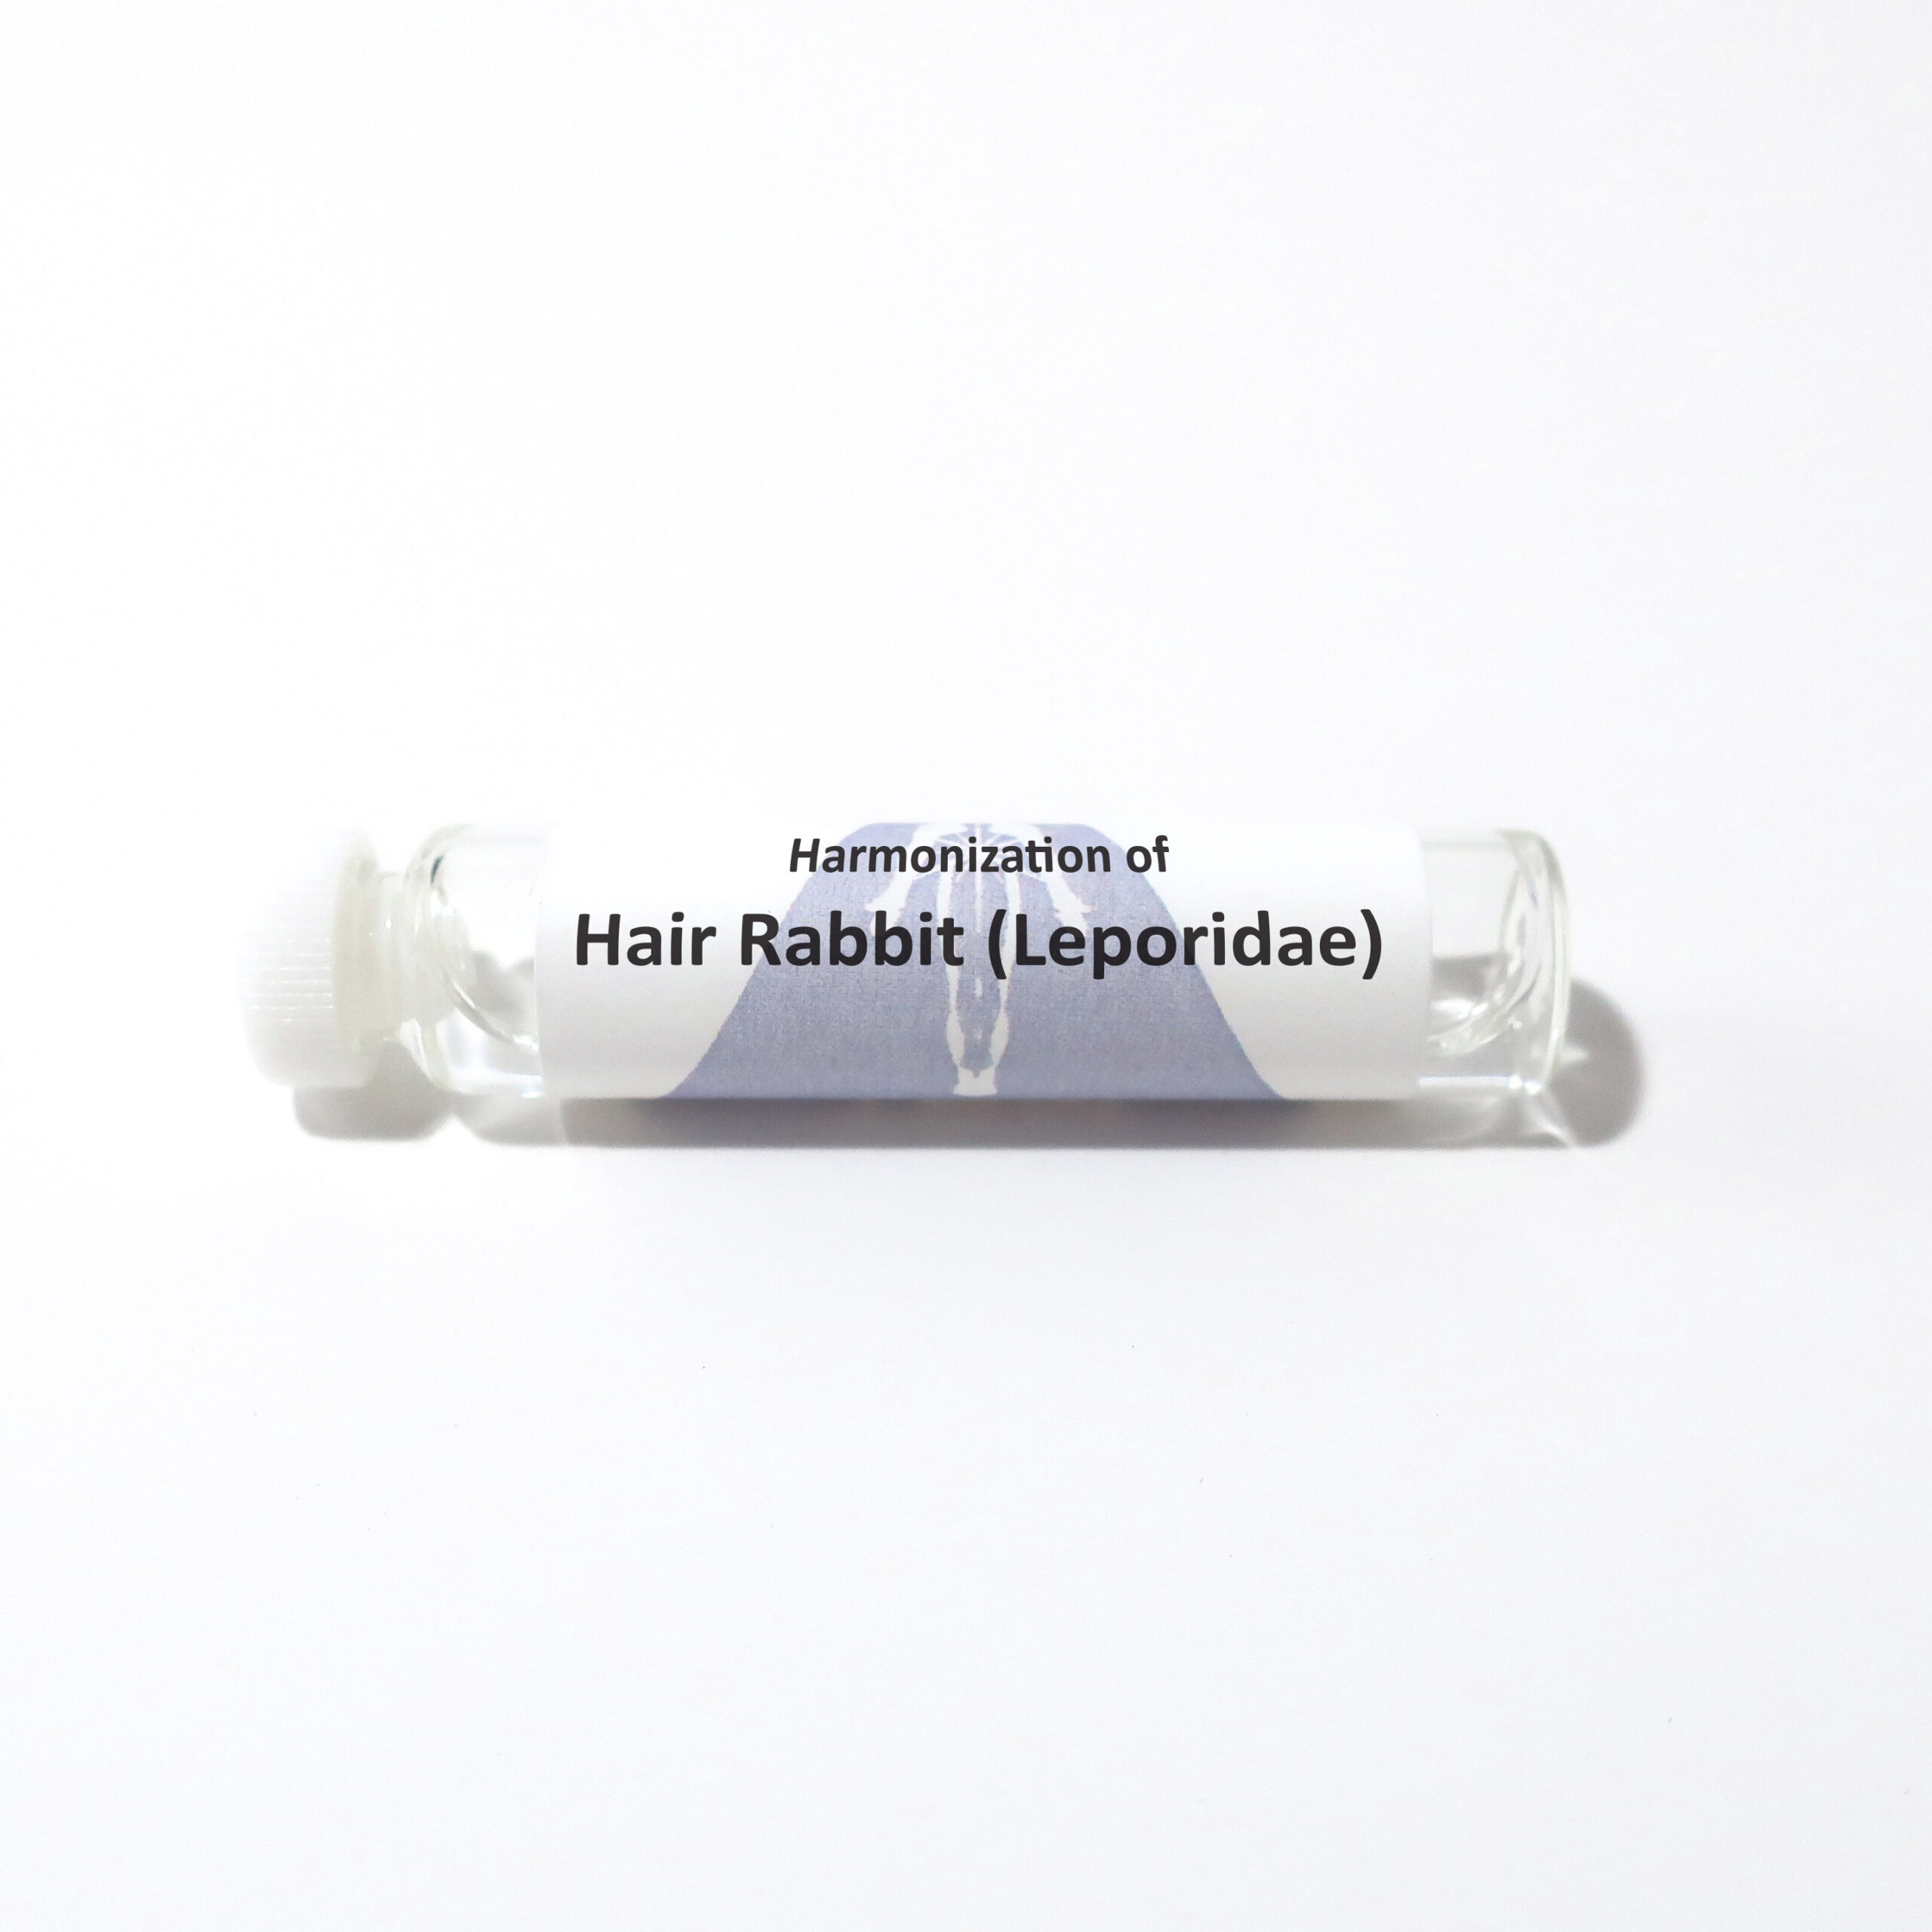 Hair, Rabbit (Leporidae)